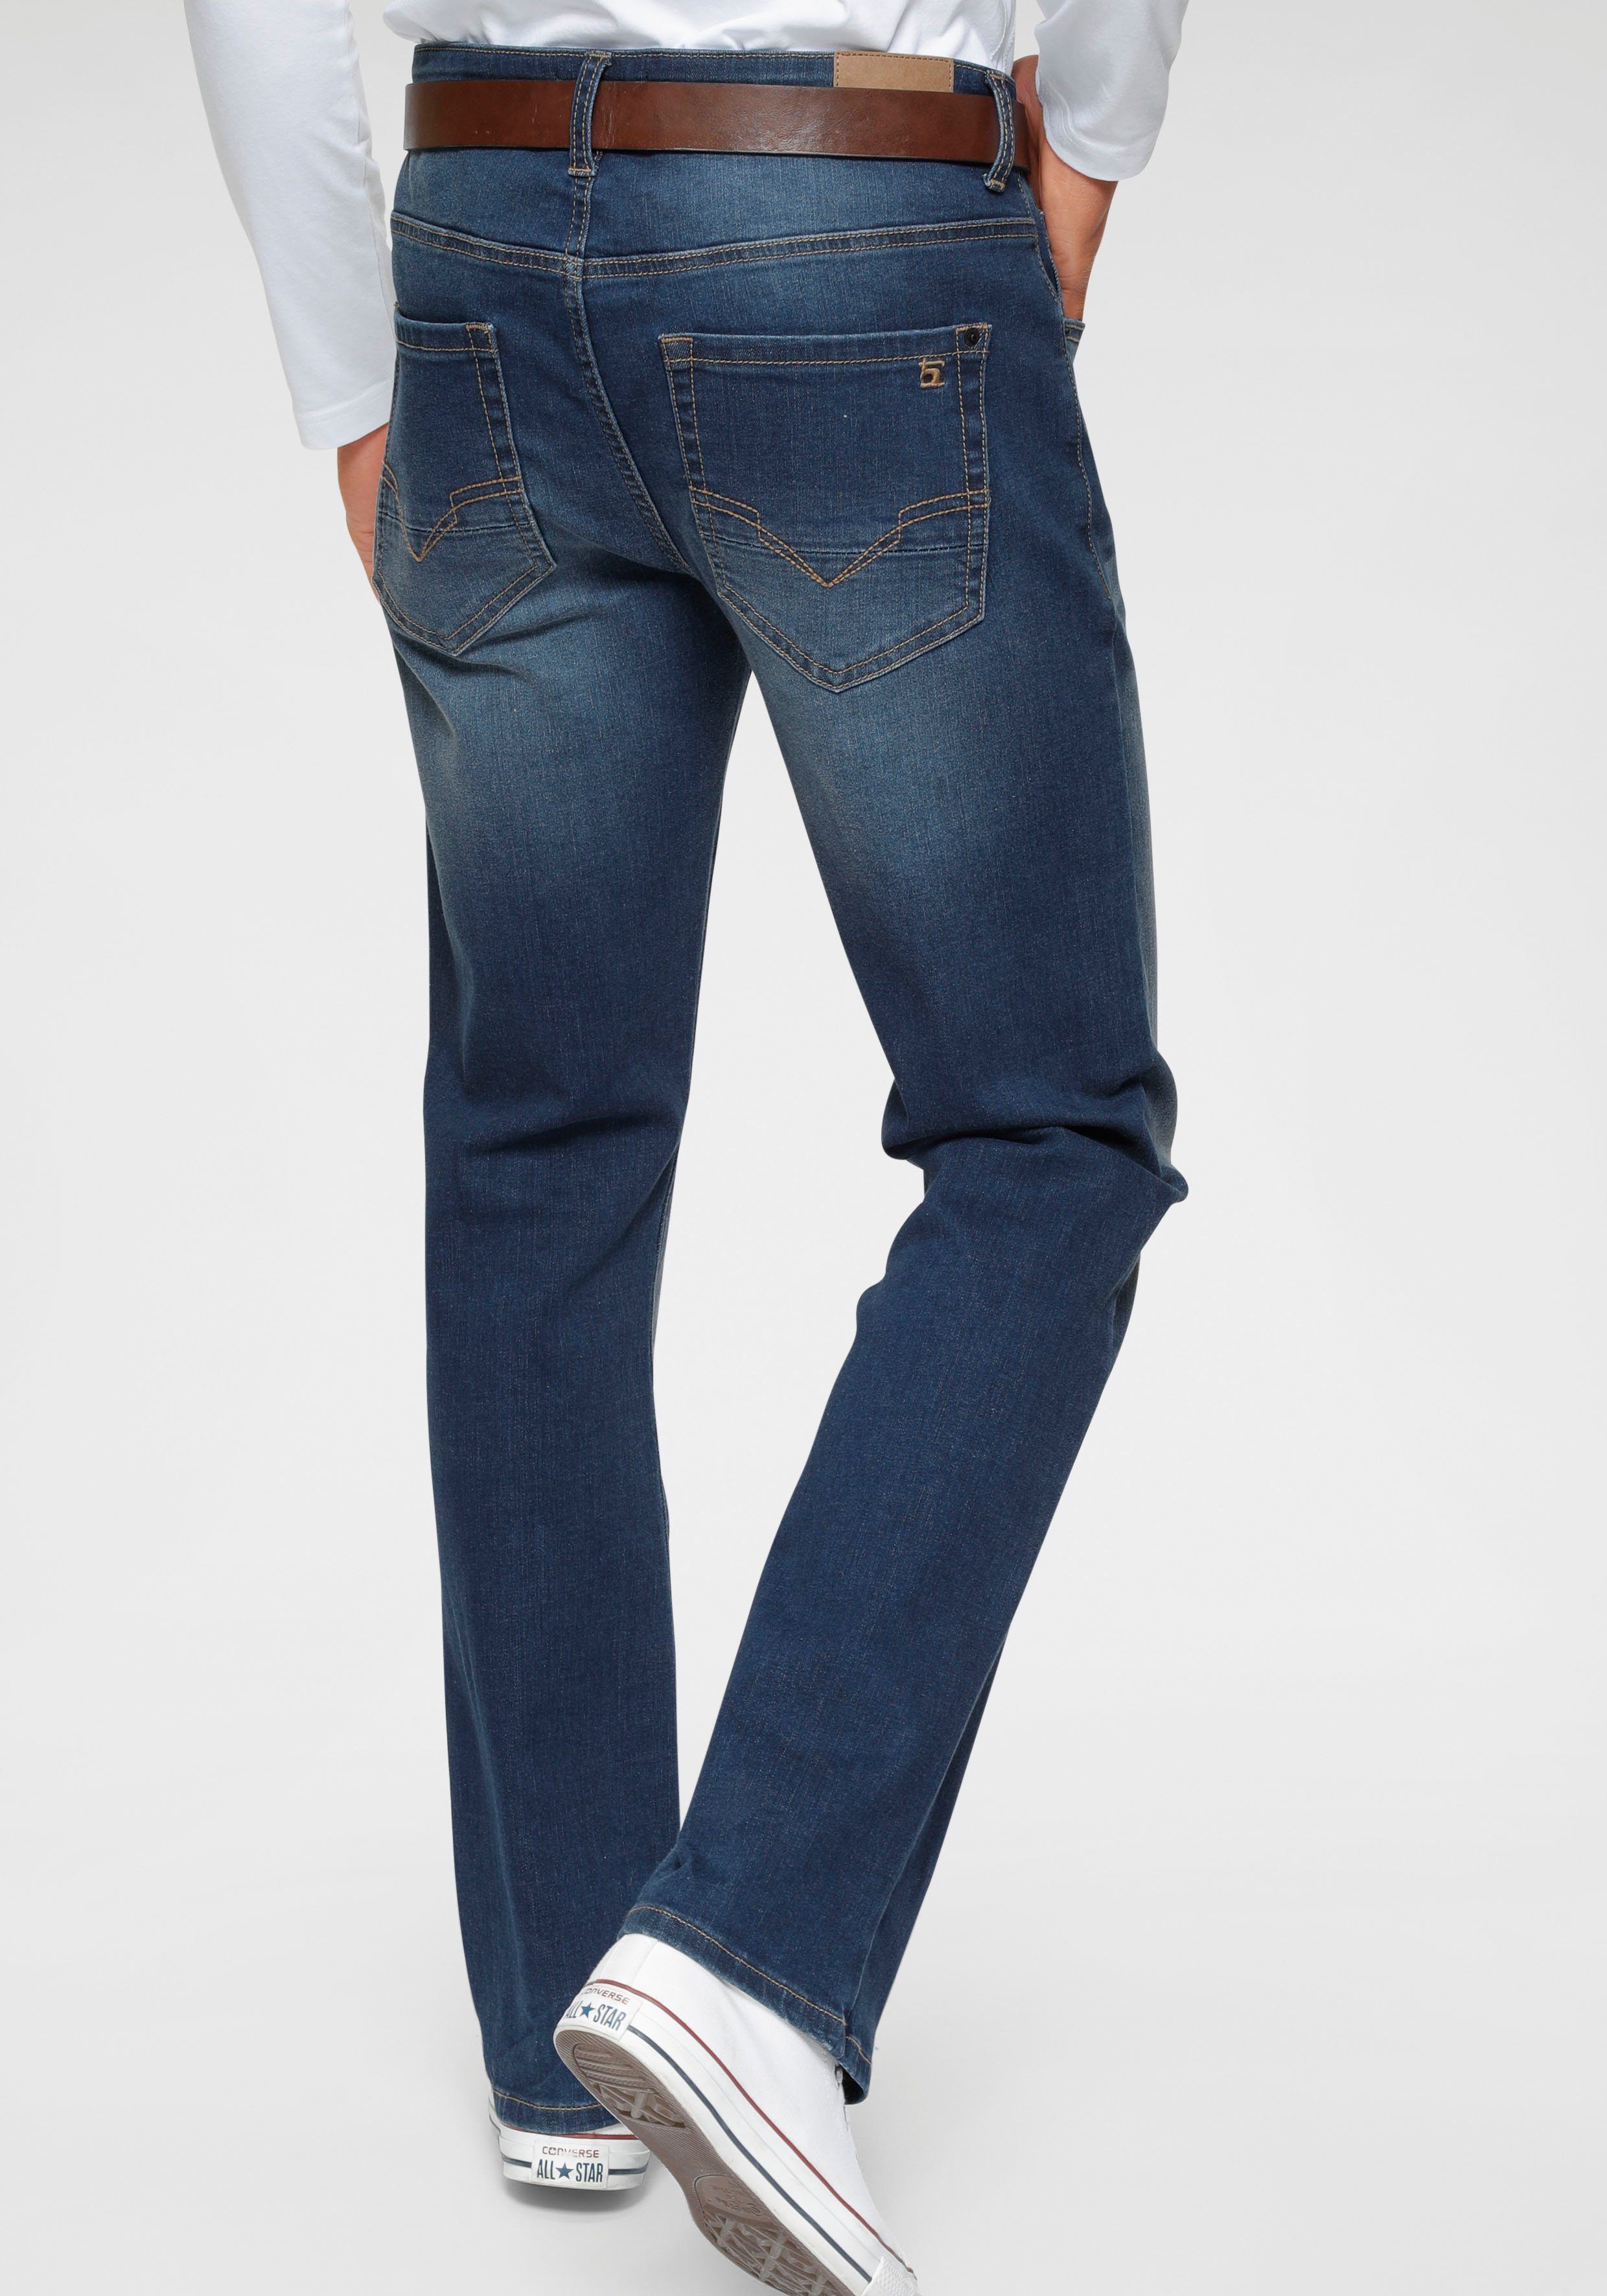 H.I.S Jeans Herren online kaufen | OTTO